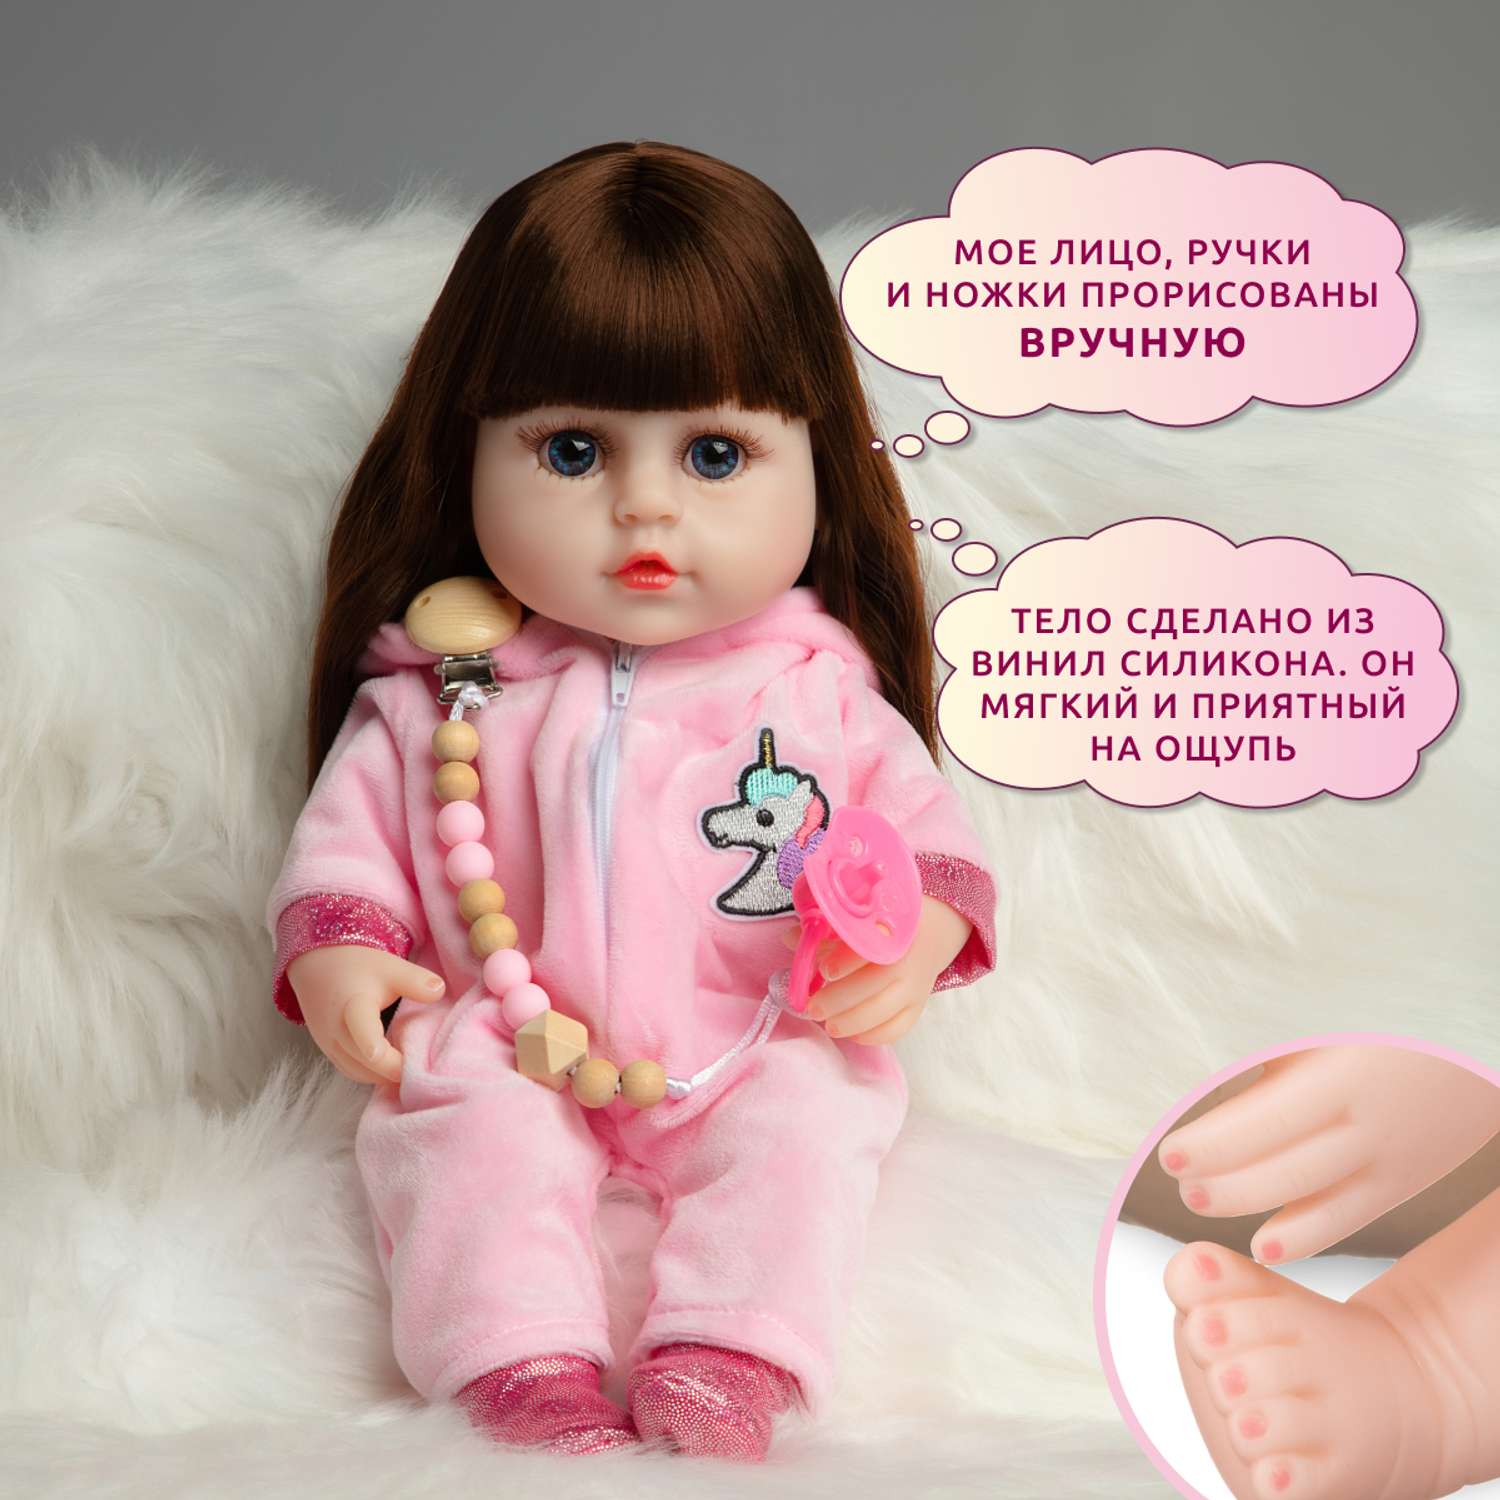 Кукла Реборн QA BABY Роза девочка интерактивная Пупс набор игрушки для ванной для девочки 38 см 3807 - фото 5